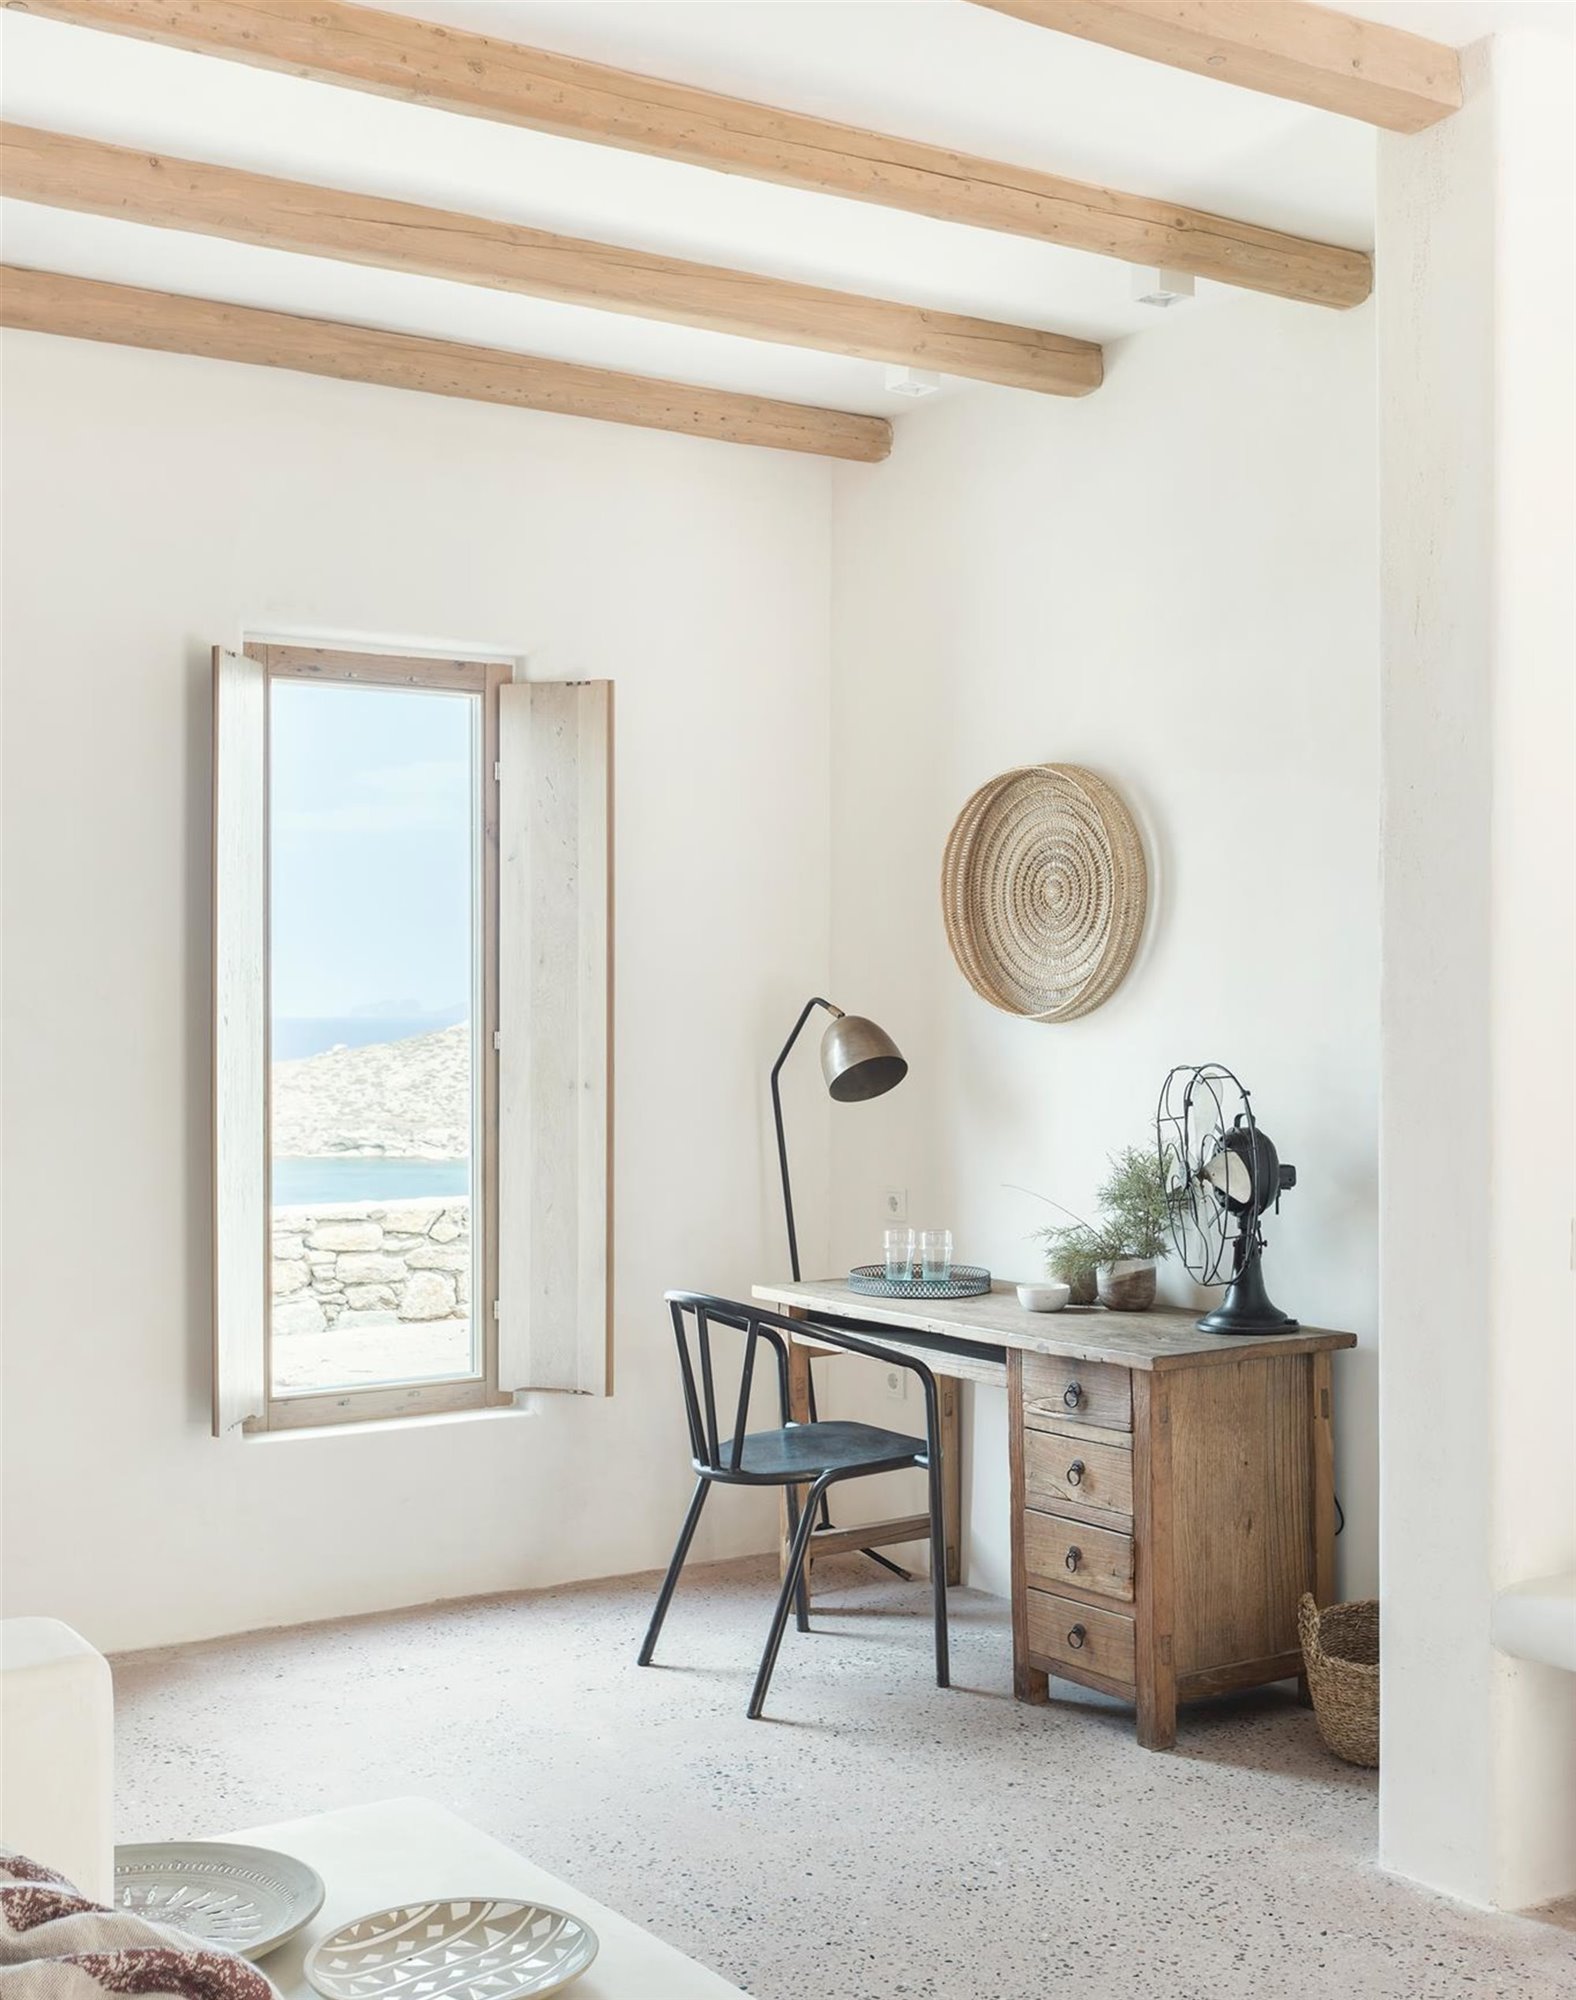 Rincón con escritorio de madera del Wild hotel by interni en grecia